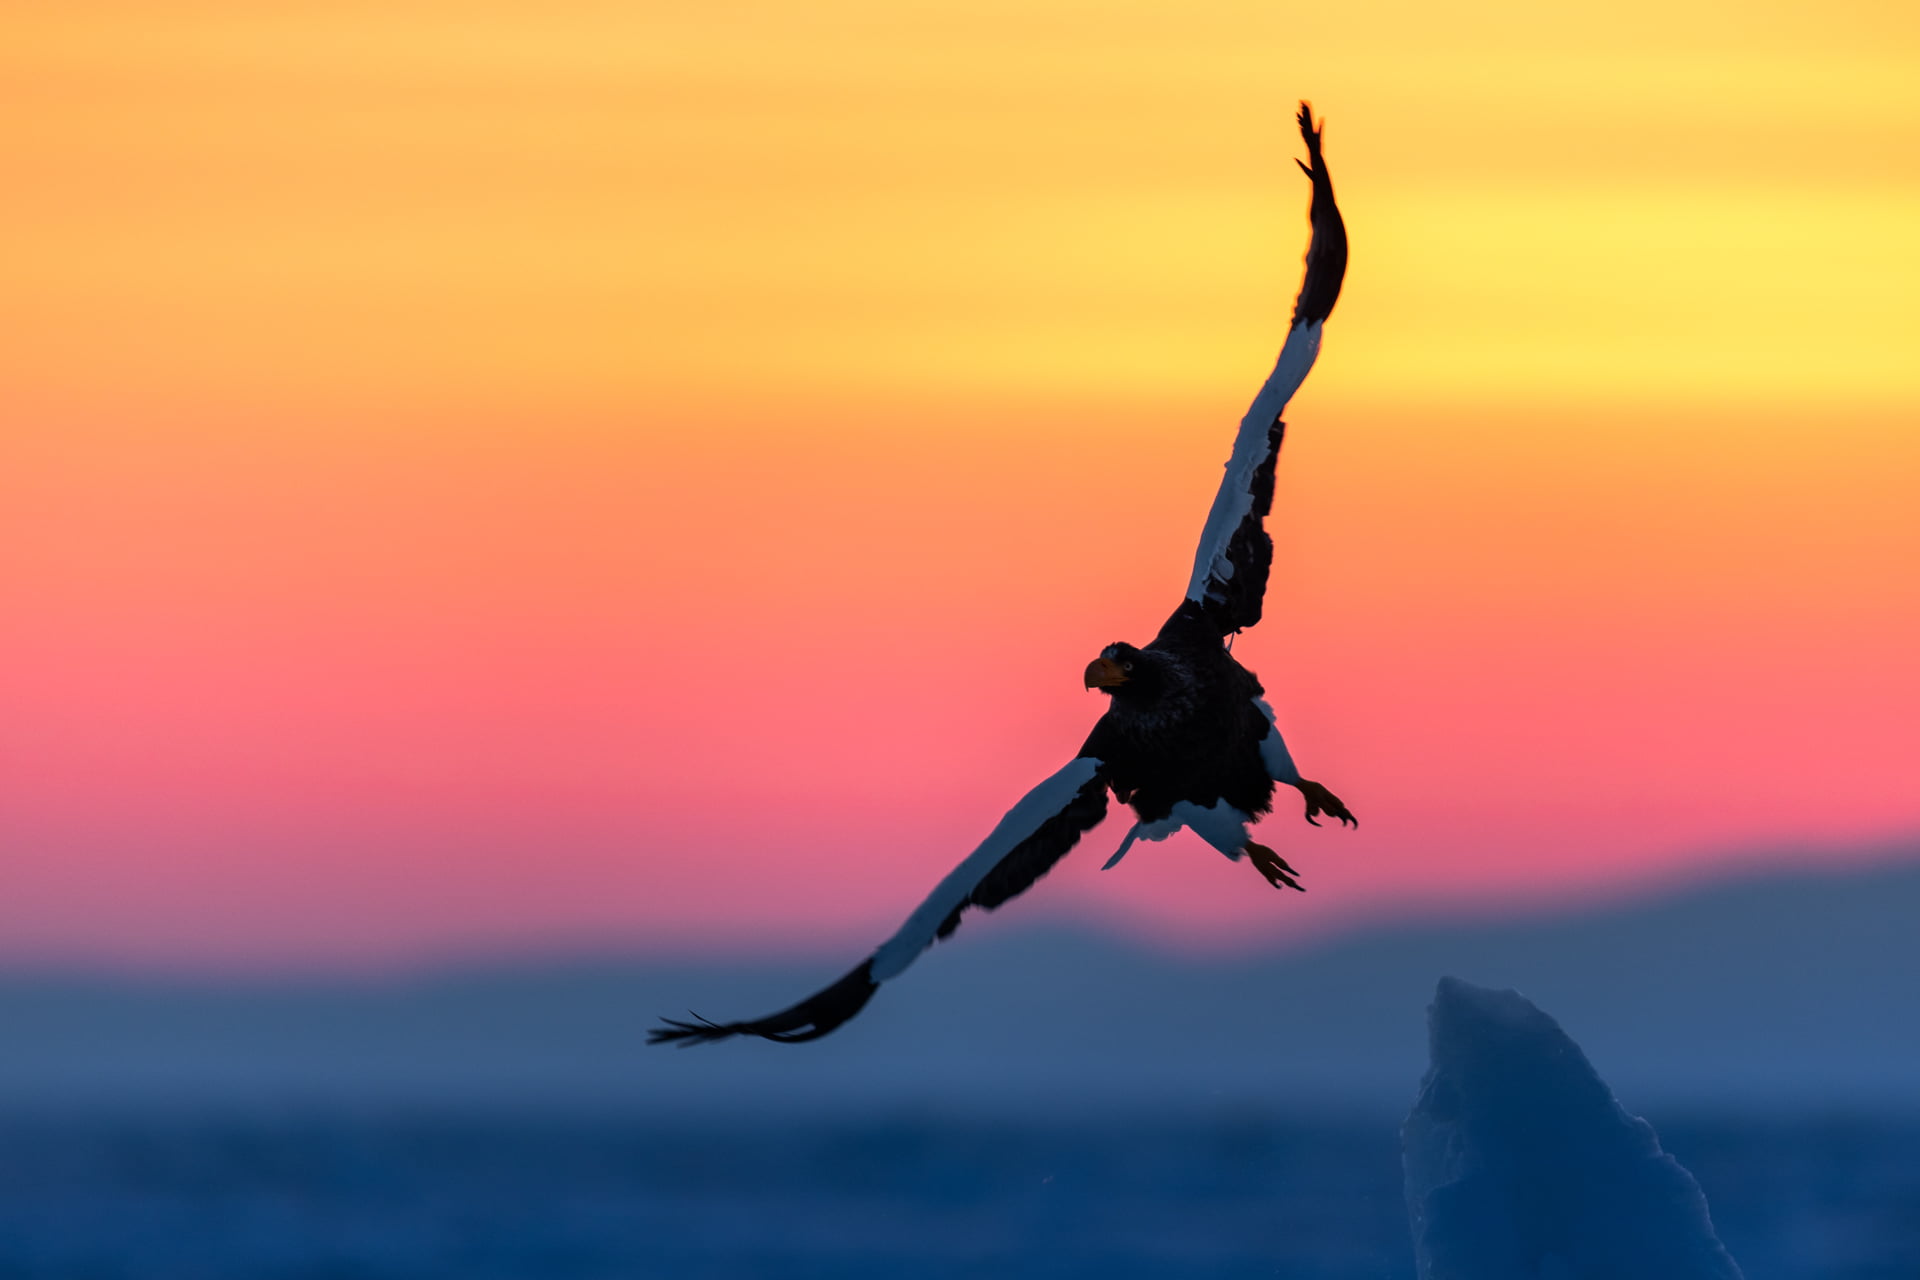 Pygargue de Steller s'envole depuis un glacier lors d'un lever de solei, Hokkaido, Japon - Steller's Sea Eagle flies away from a glacier during a sunrise, Hokkaido, Japan / Haliaeetus pelagicus